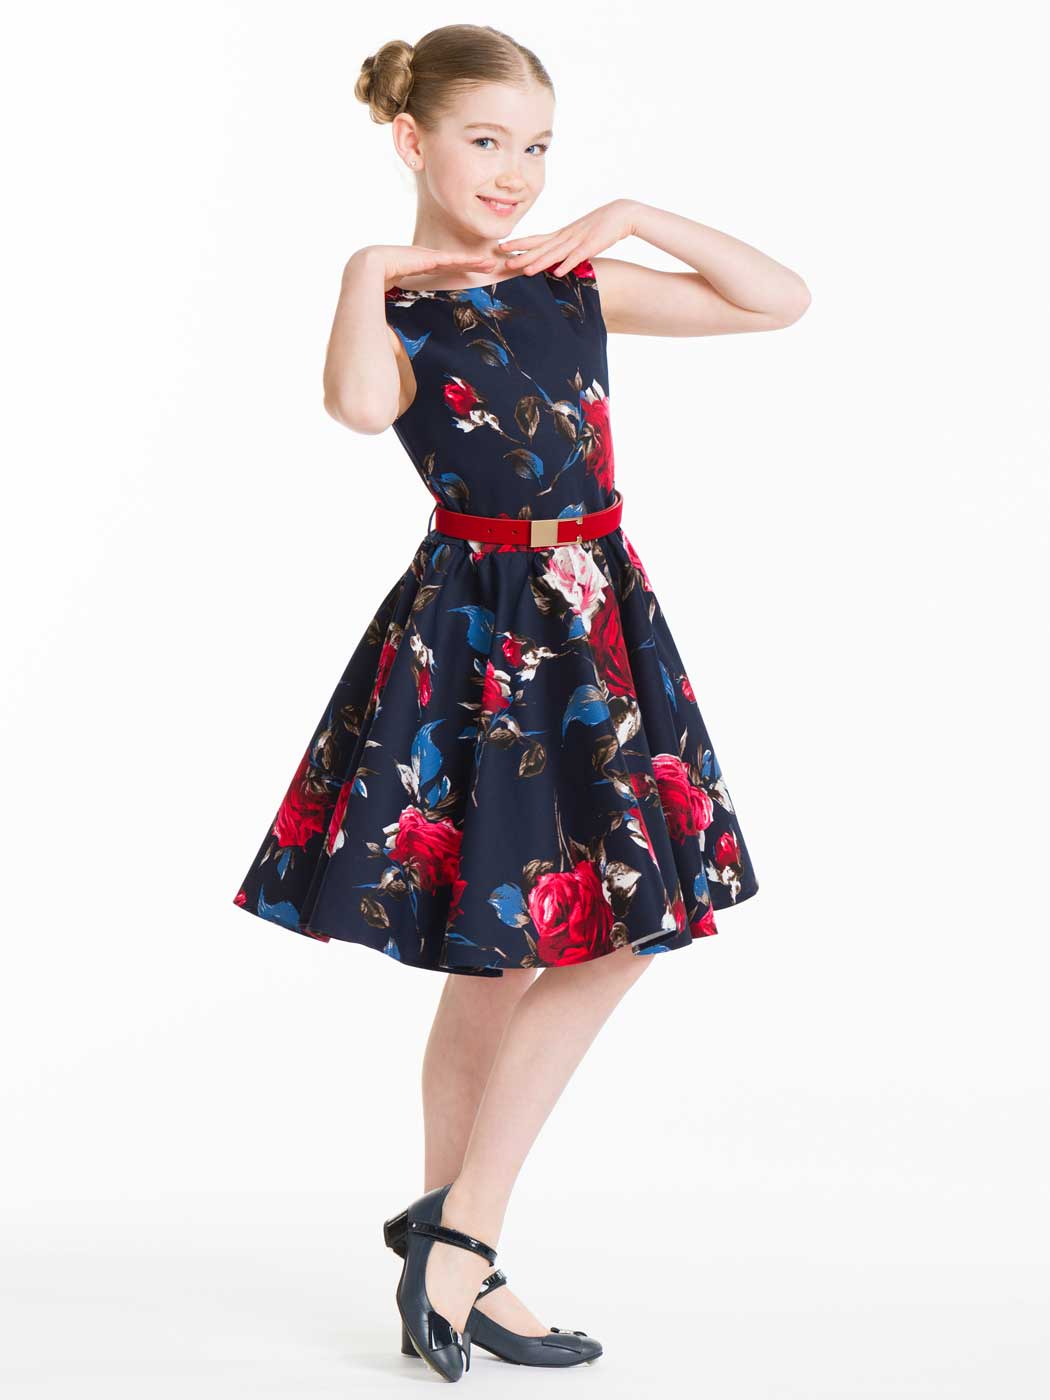 Фото товара Праздничное платье для девочки Принцесса Цветов 01005008 от Красавушка